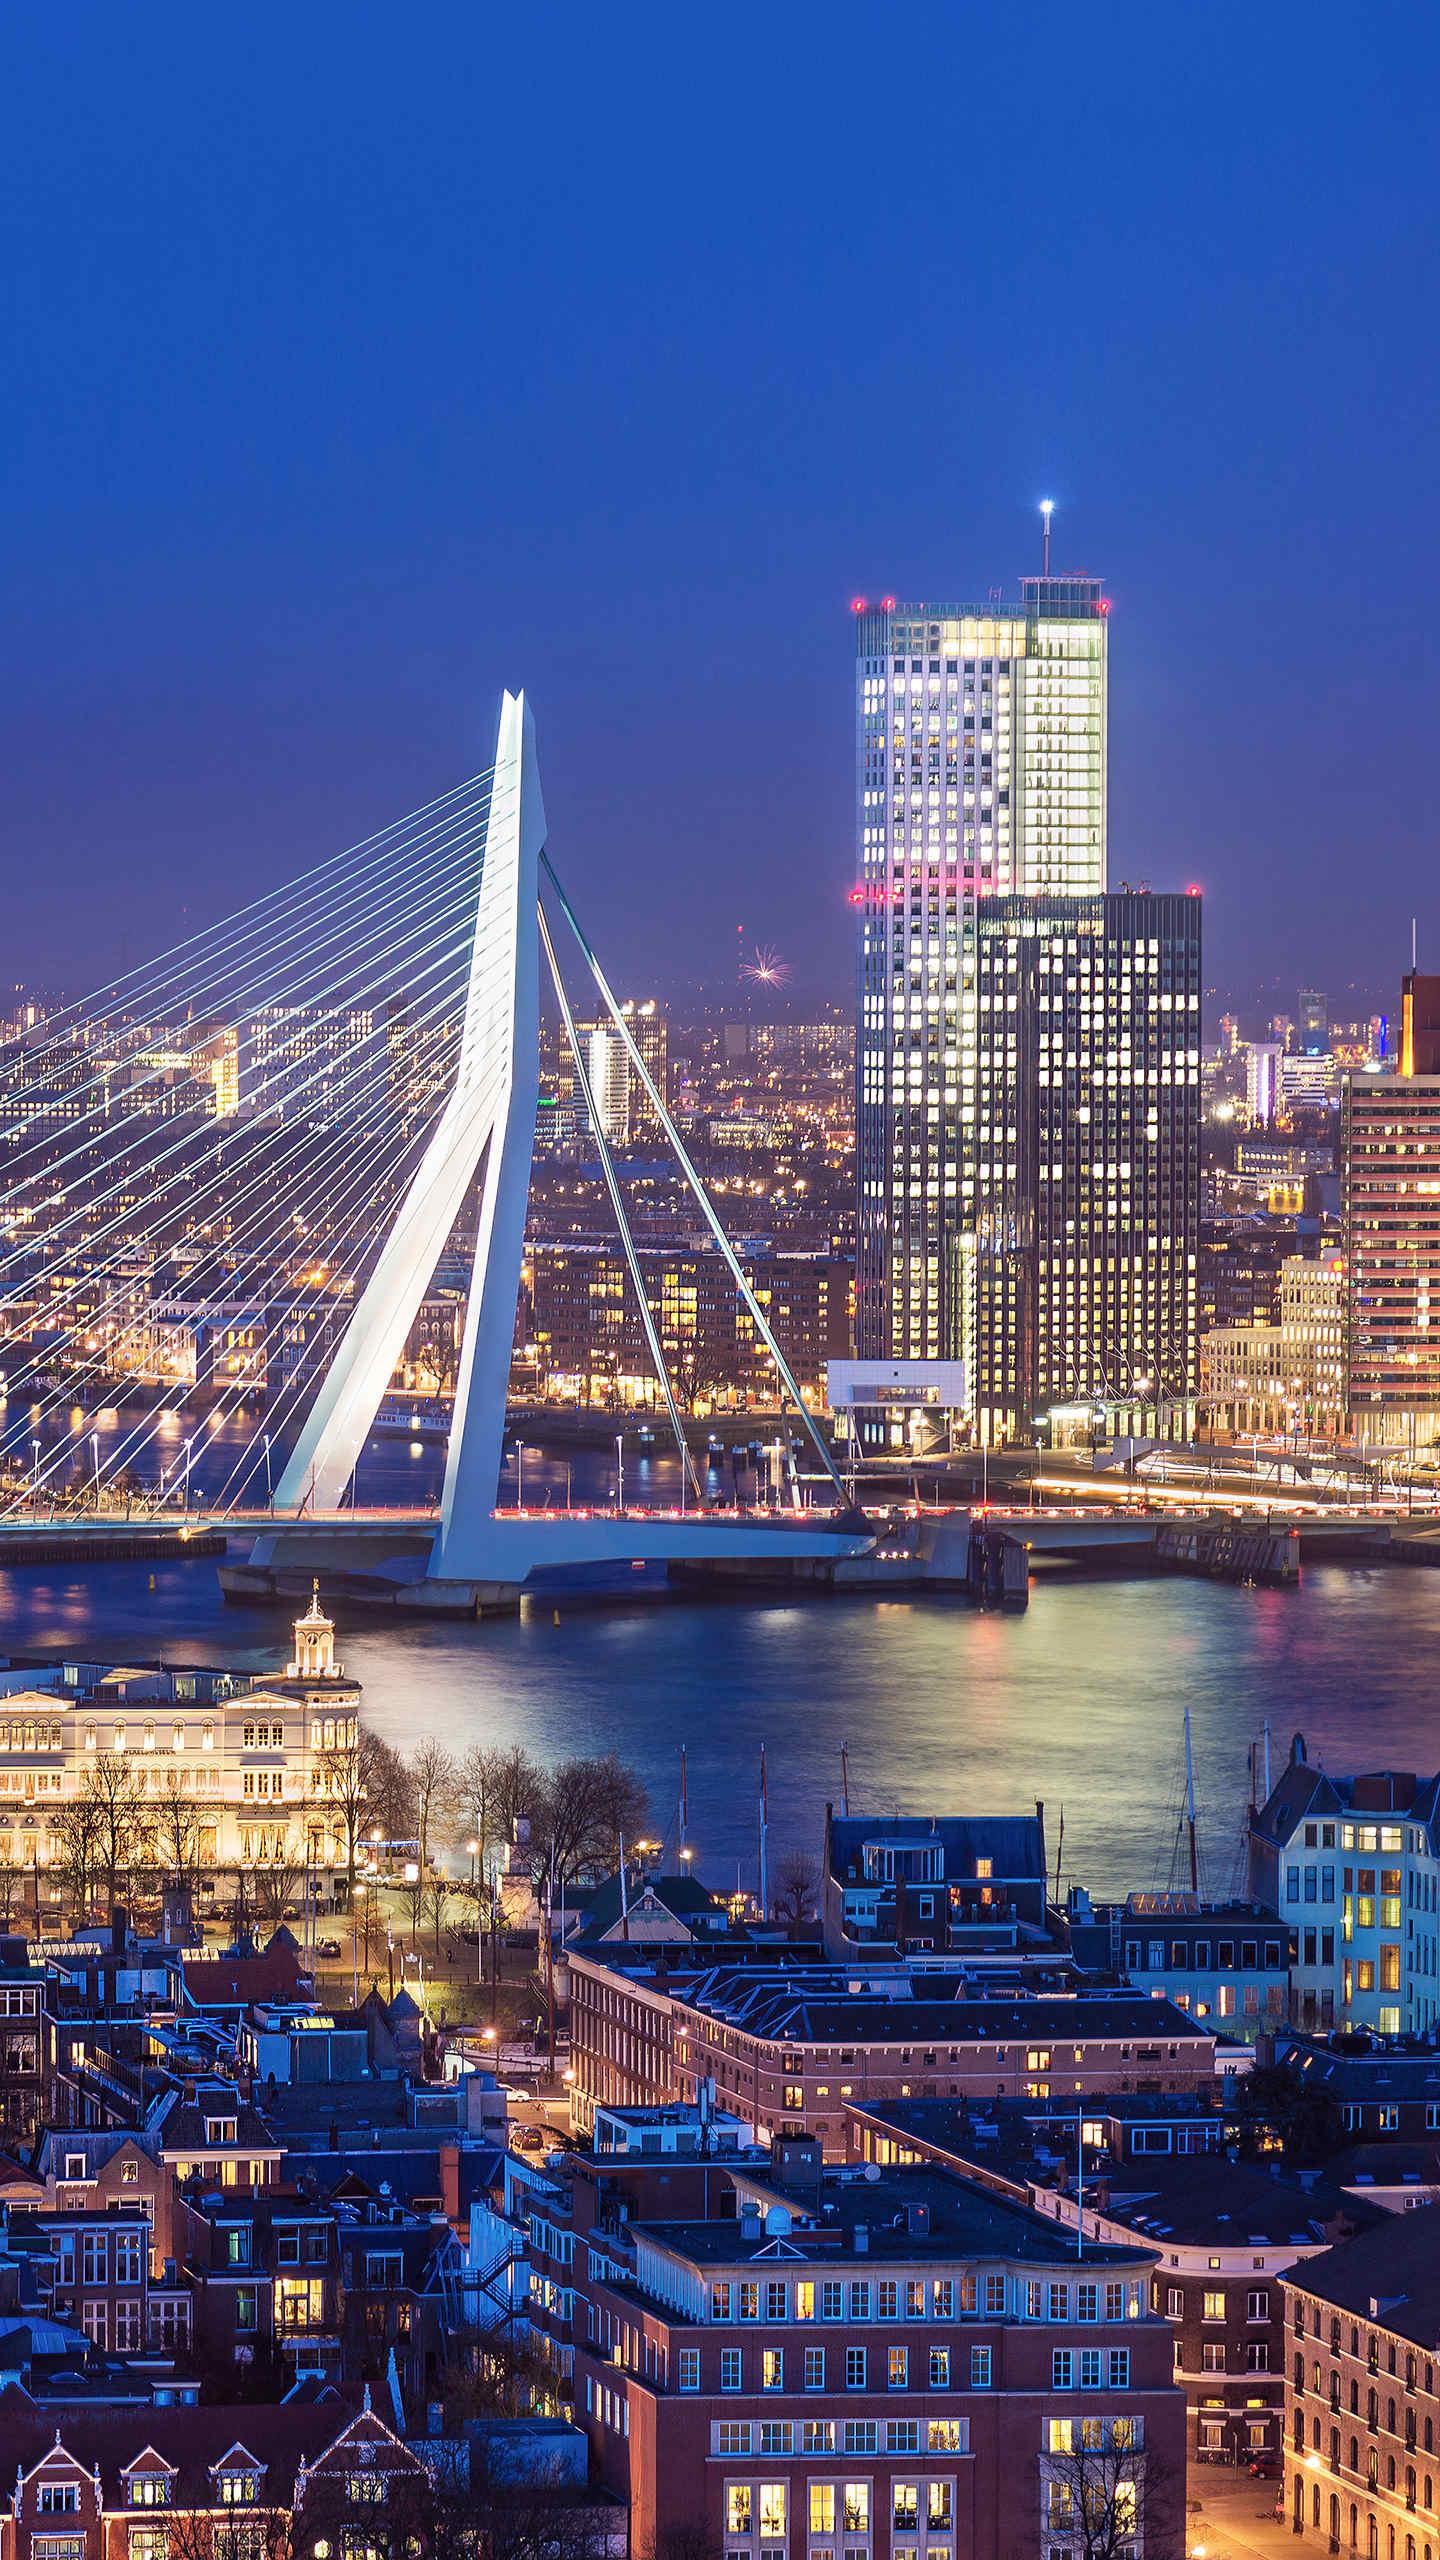 荷兰第二大城市,也是欧洲最大的海港,素有欧洲门户之称